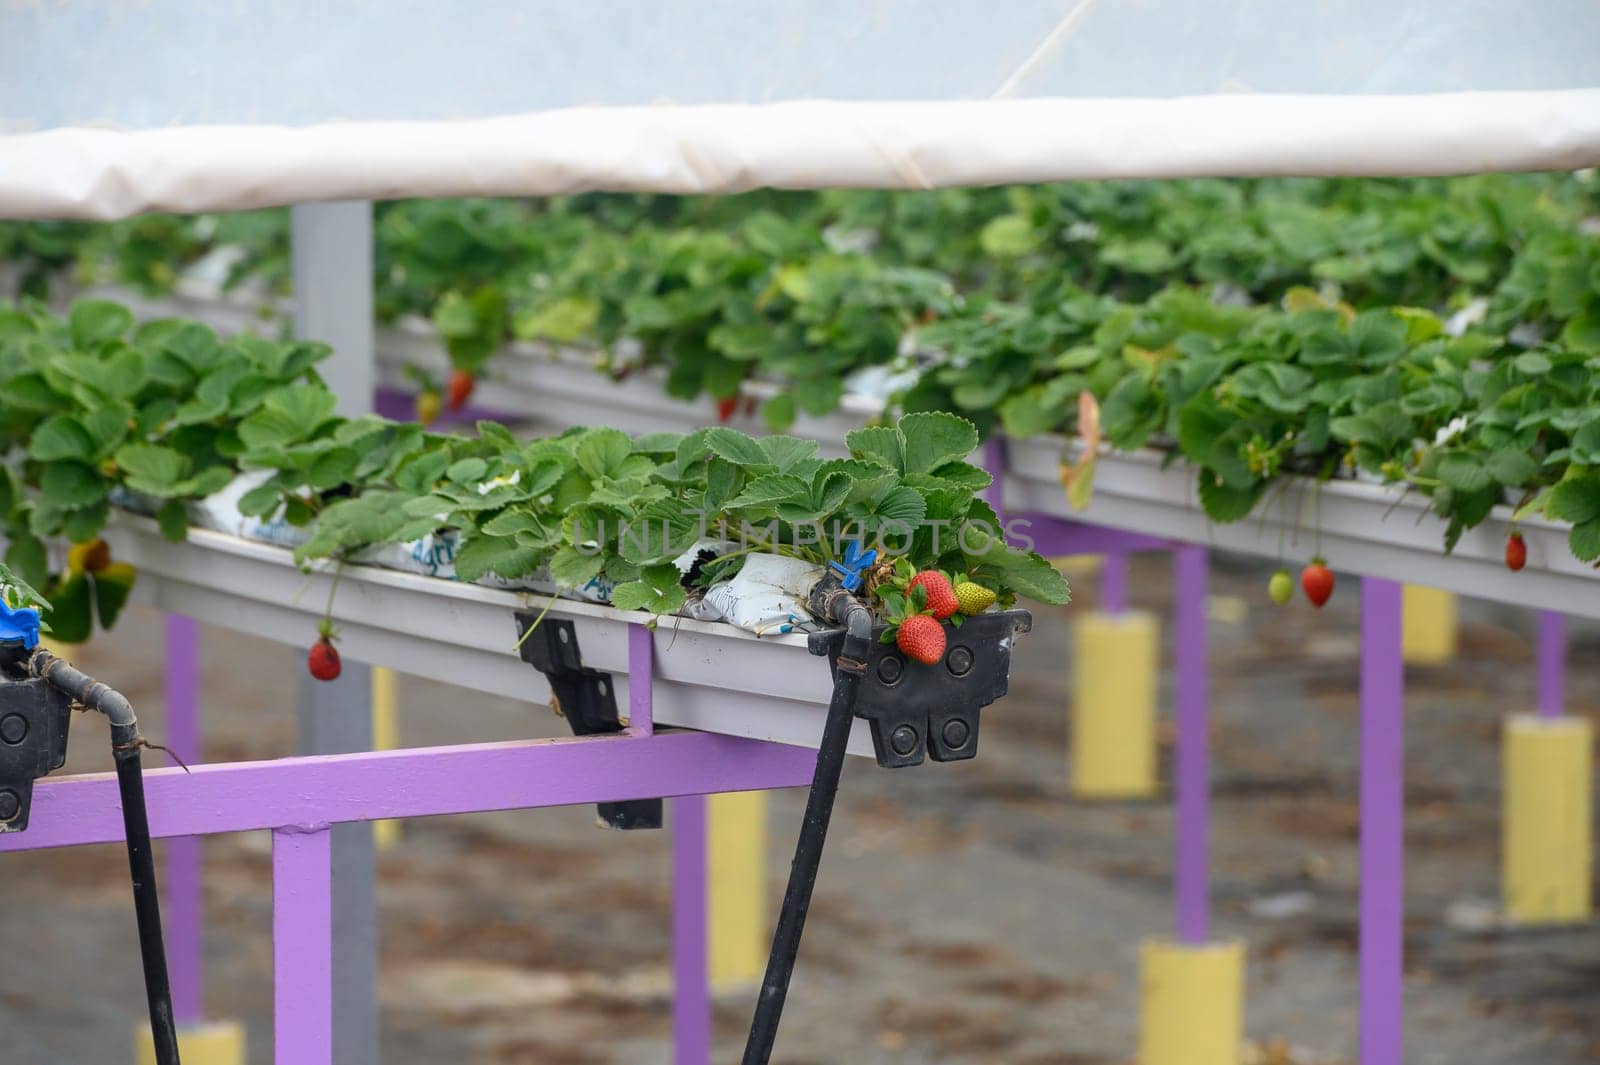 juicy strawberries ripen in a greenhouse in winter in Cyprus 2